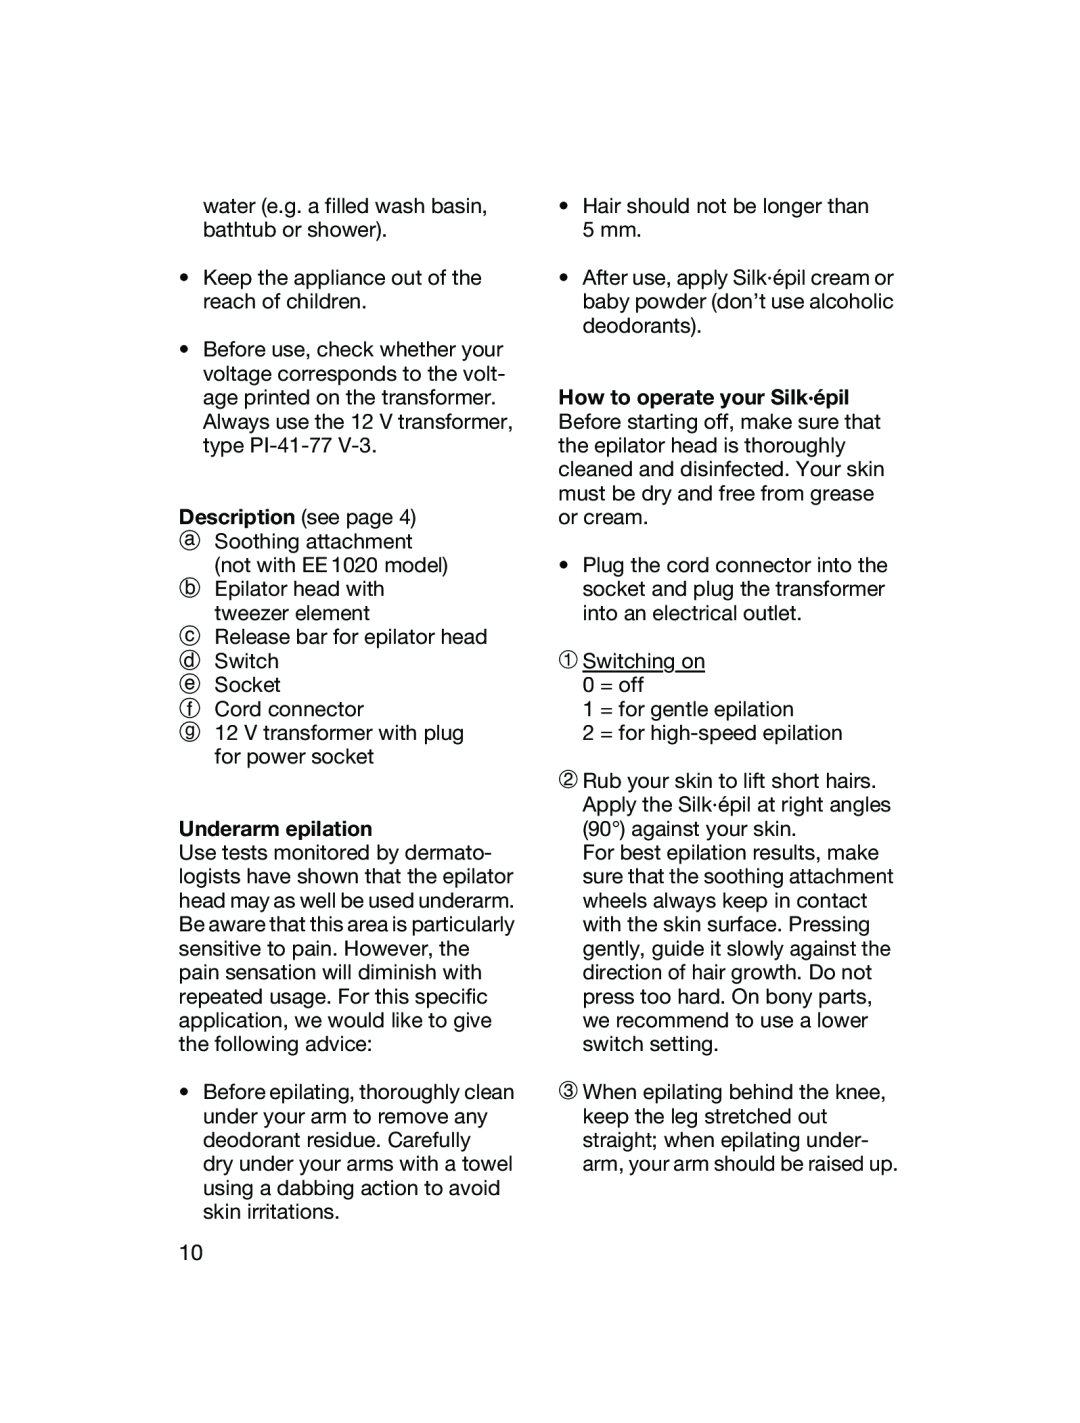 Braun EE1055, EE1020 manual Description see page, Underarm epilation 